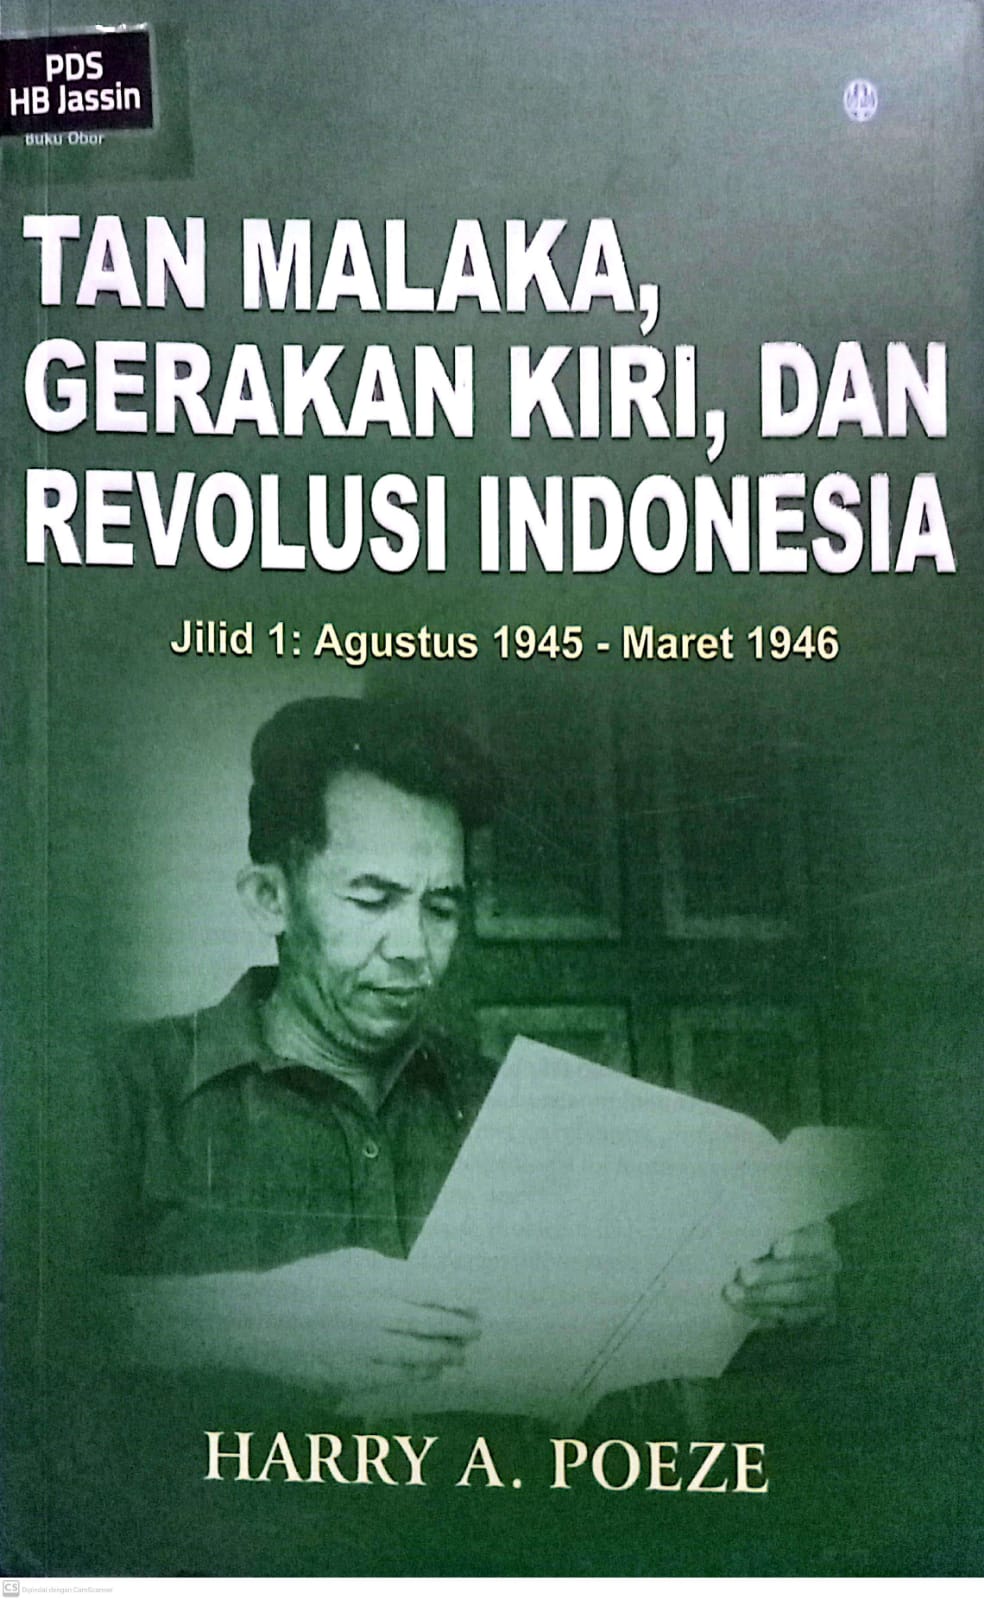 Tan Malaka, gerakan kiri, dan revolusi indonesia